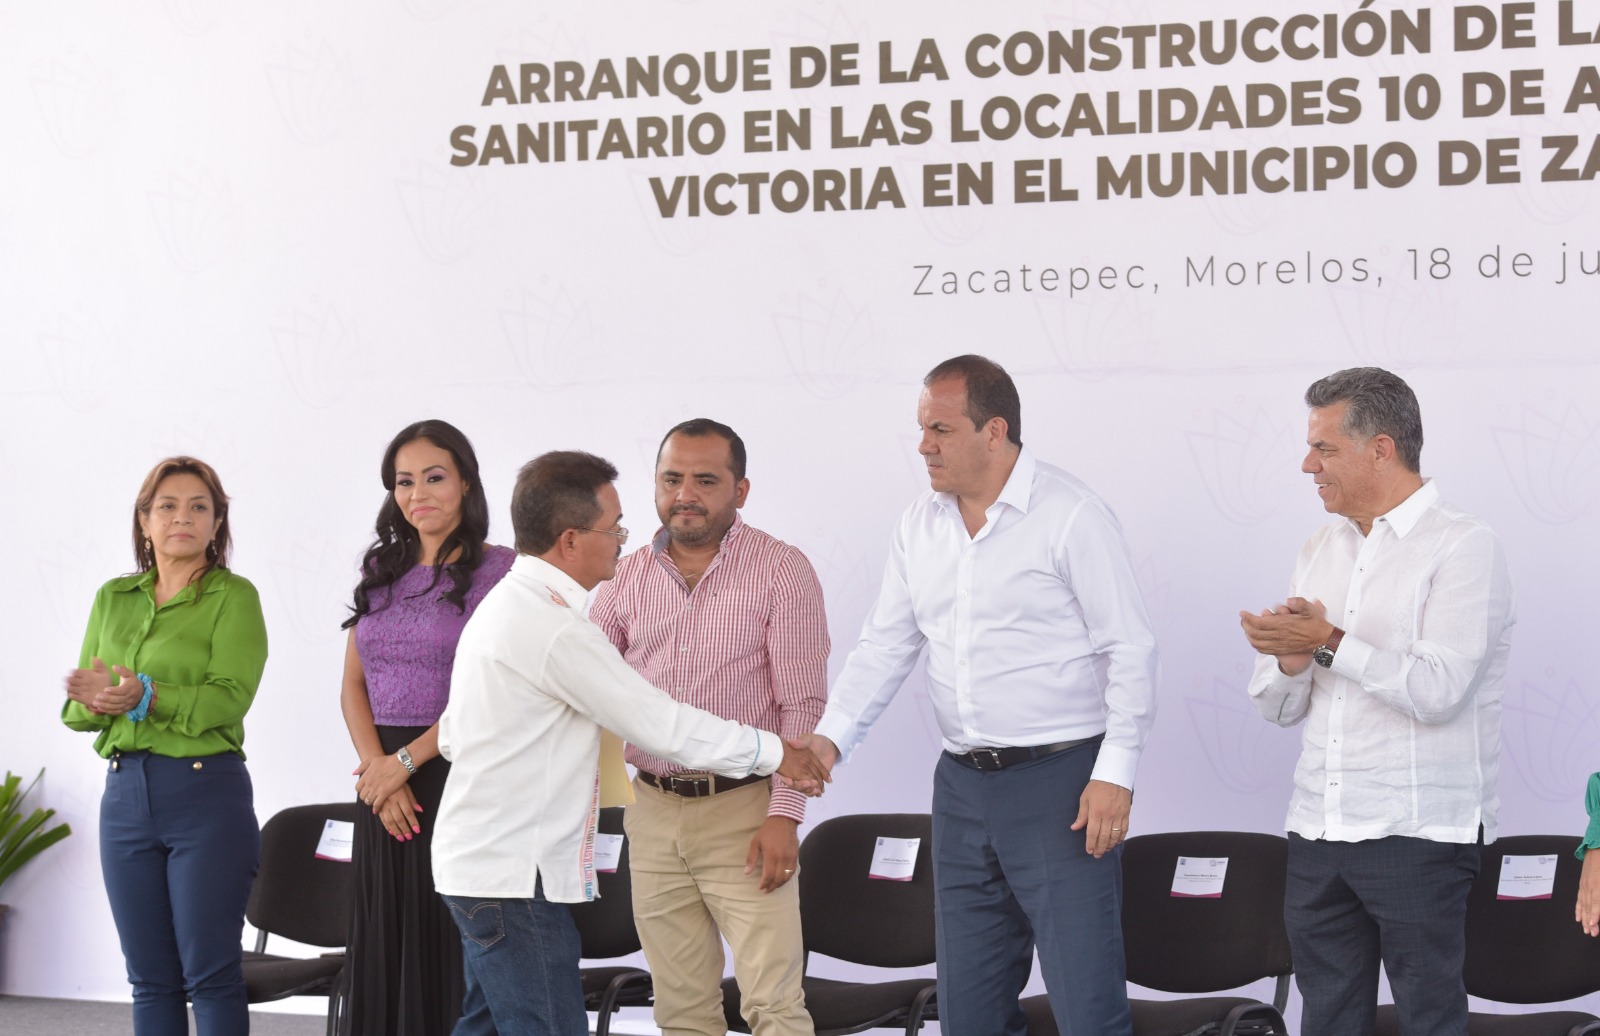  Inicia la segunda etapa de construcción de red alcantarillado sanitario en Zacatepec